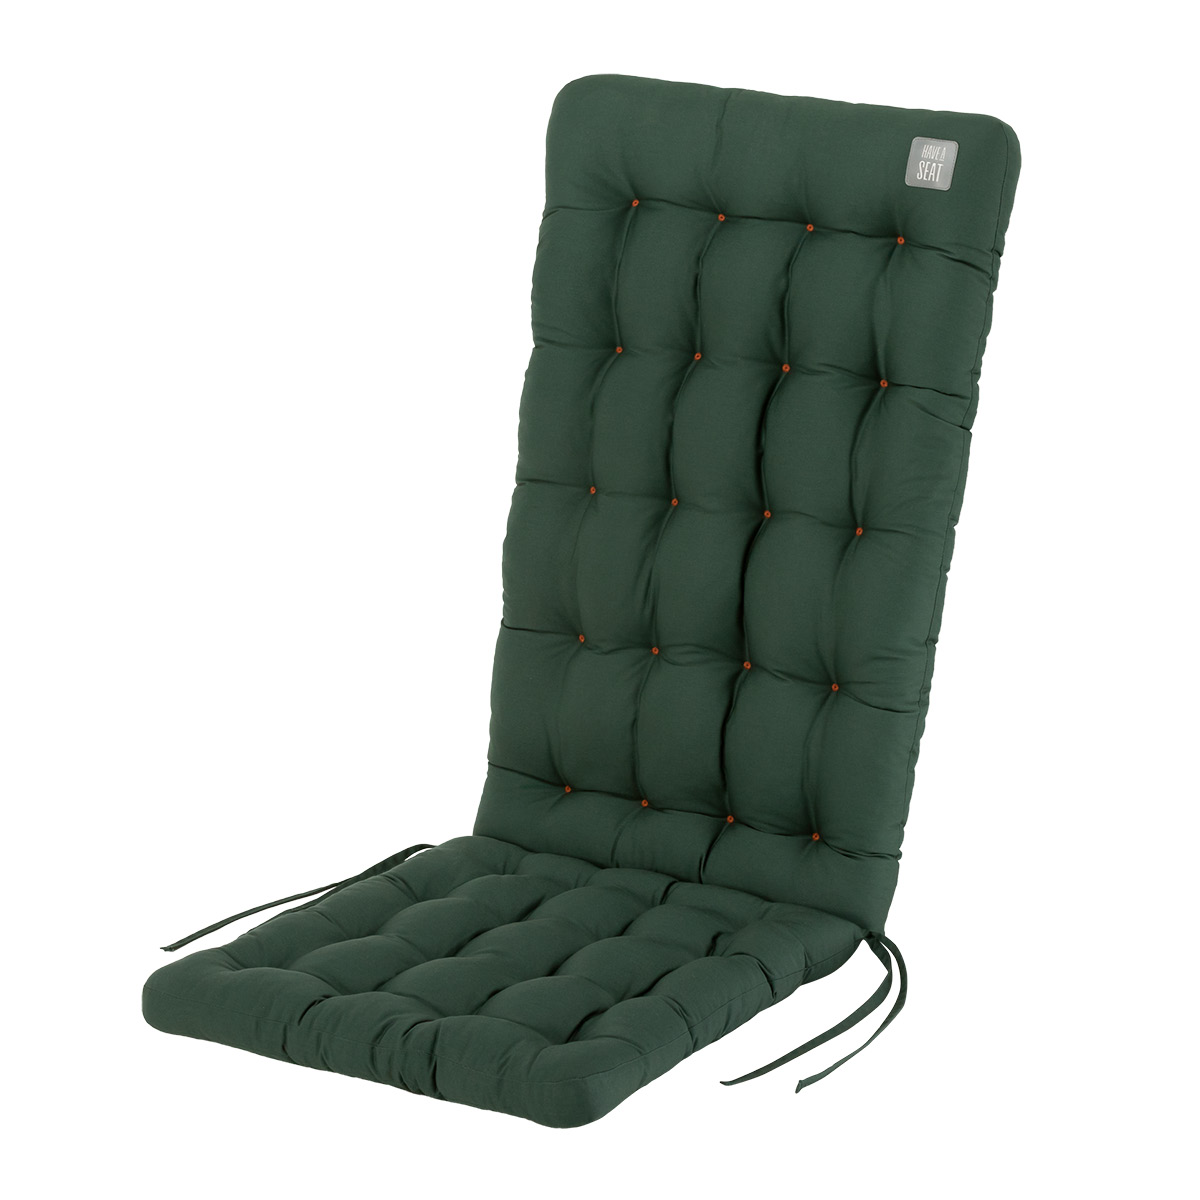 Sitzauflage Hochlehner dunkelgrün | 1 St. | dicke Polsterung, 8/6 cm, wetterfest | mit Befestigungsbänder für Gartenstühle | HAVE A SEAT Living 